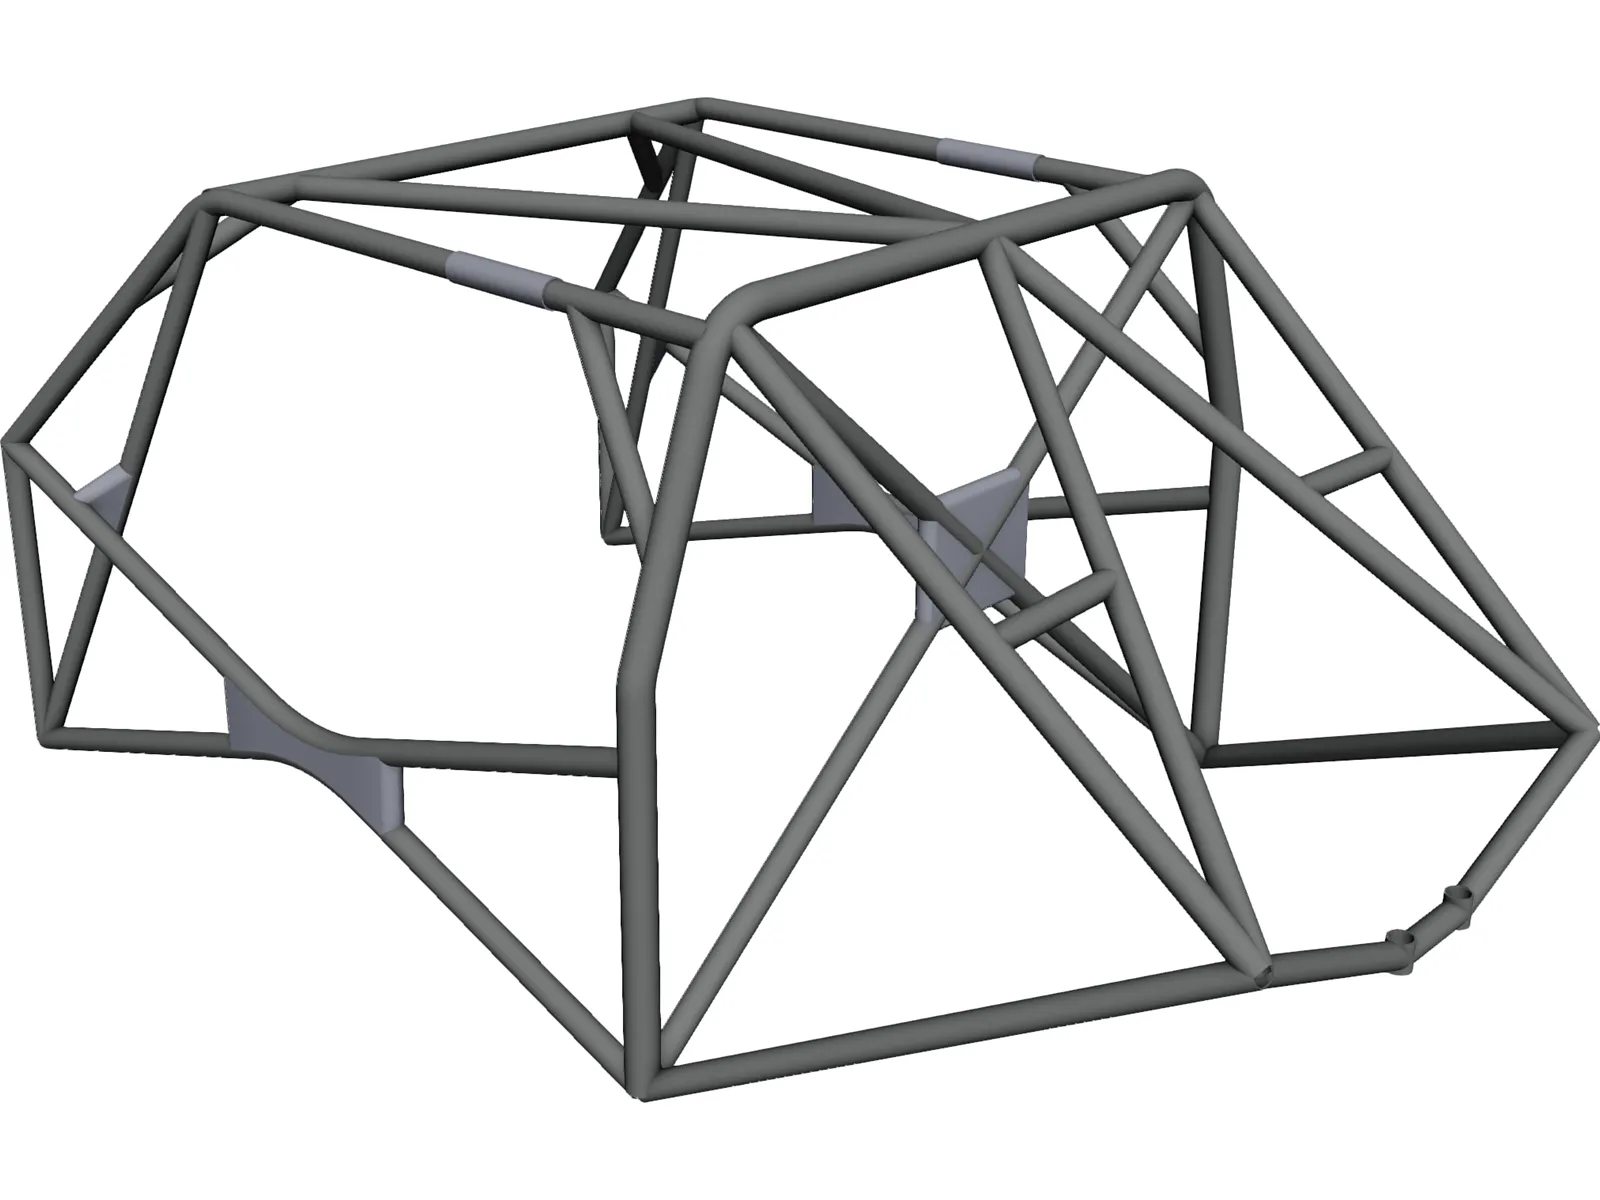 Roll Cage FIA 3D Model